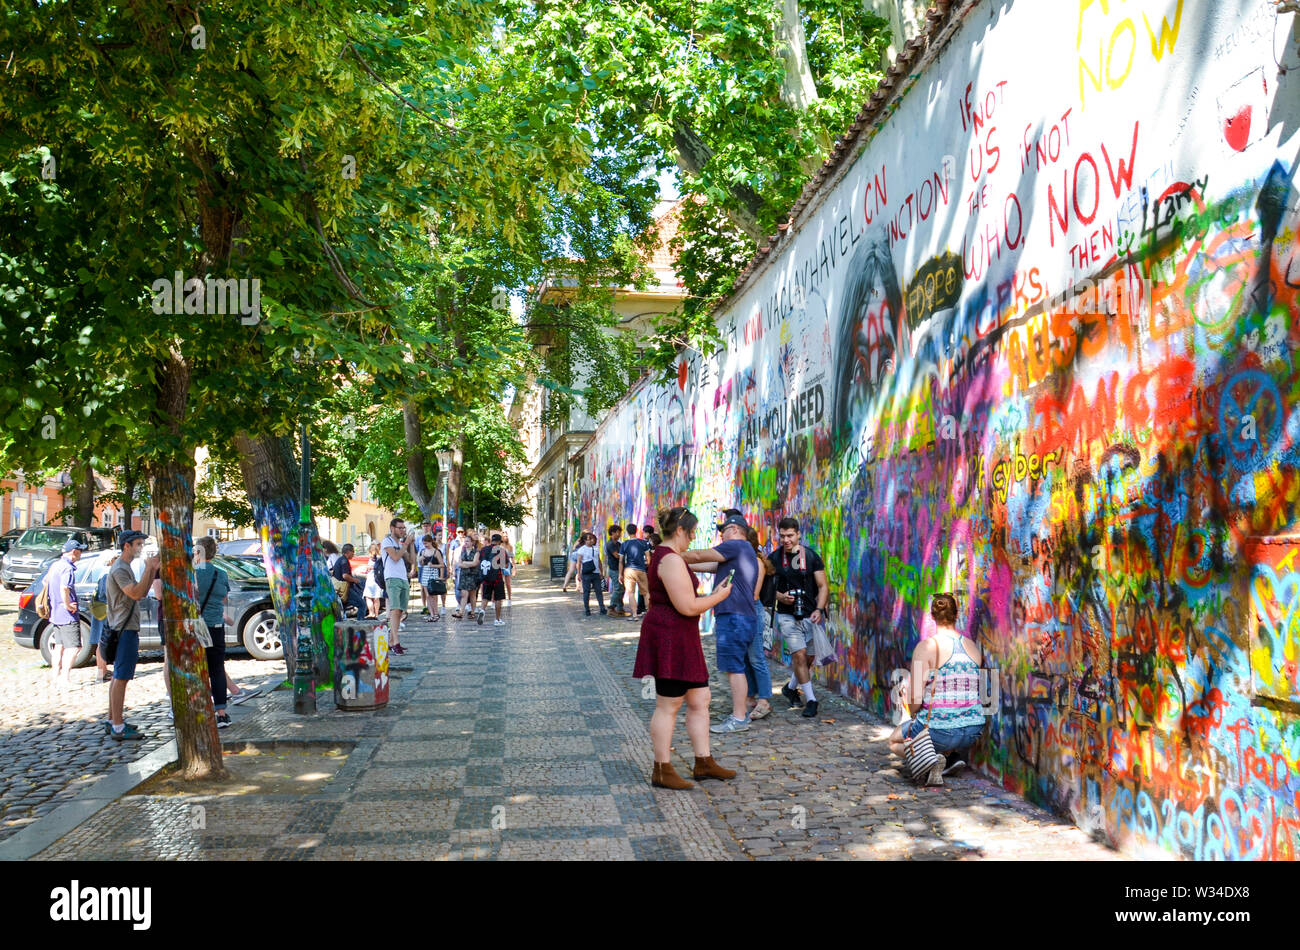 Prague, République tchèque - 27 juin 2019 : les touristes de prendre des photos en face de la célèbre John Lennon Wall dans le centre de la capitale tchèque. Mur de graffiti inspiré par le célèbre artiste. Lieu touristique populaire. Banque D'Images